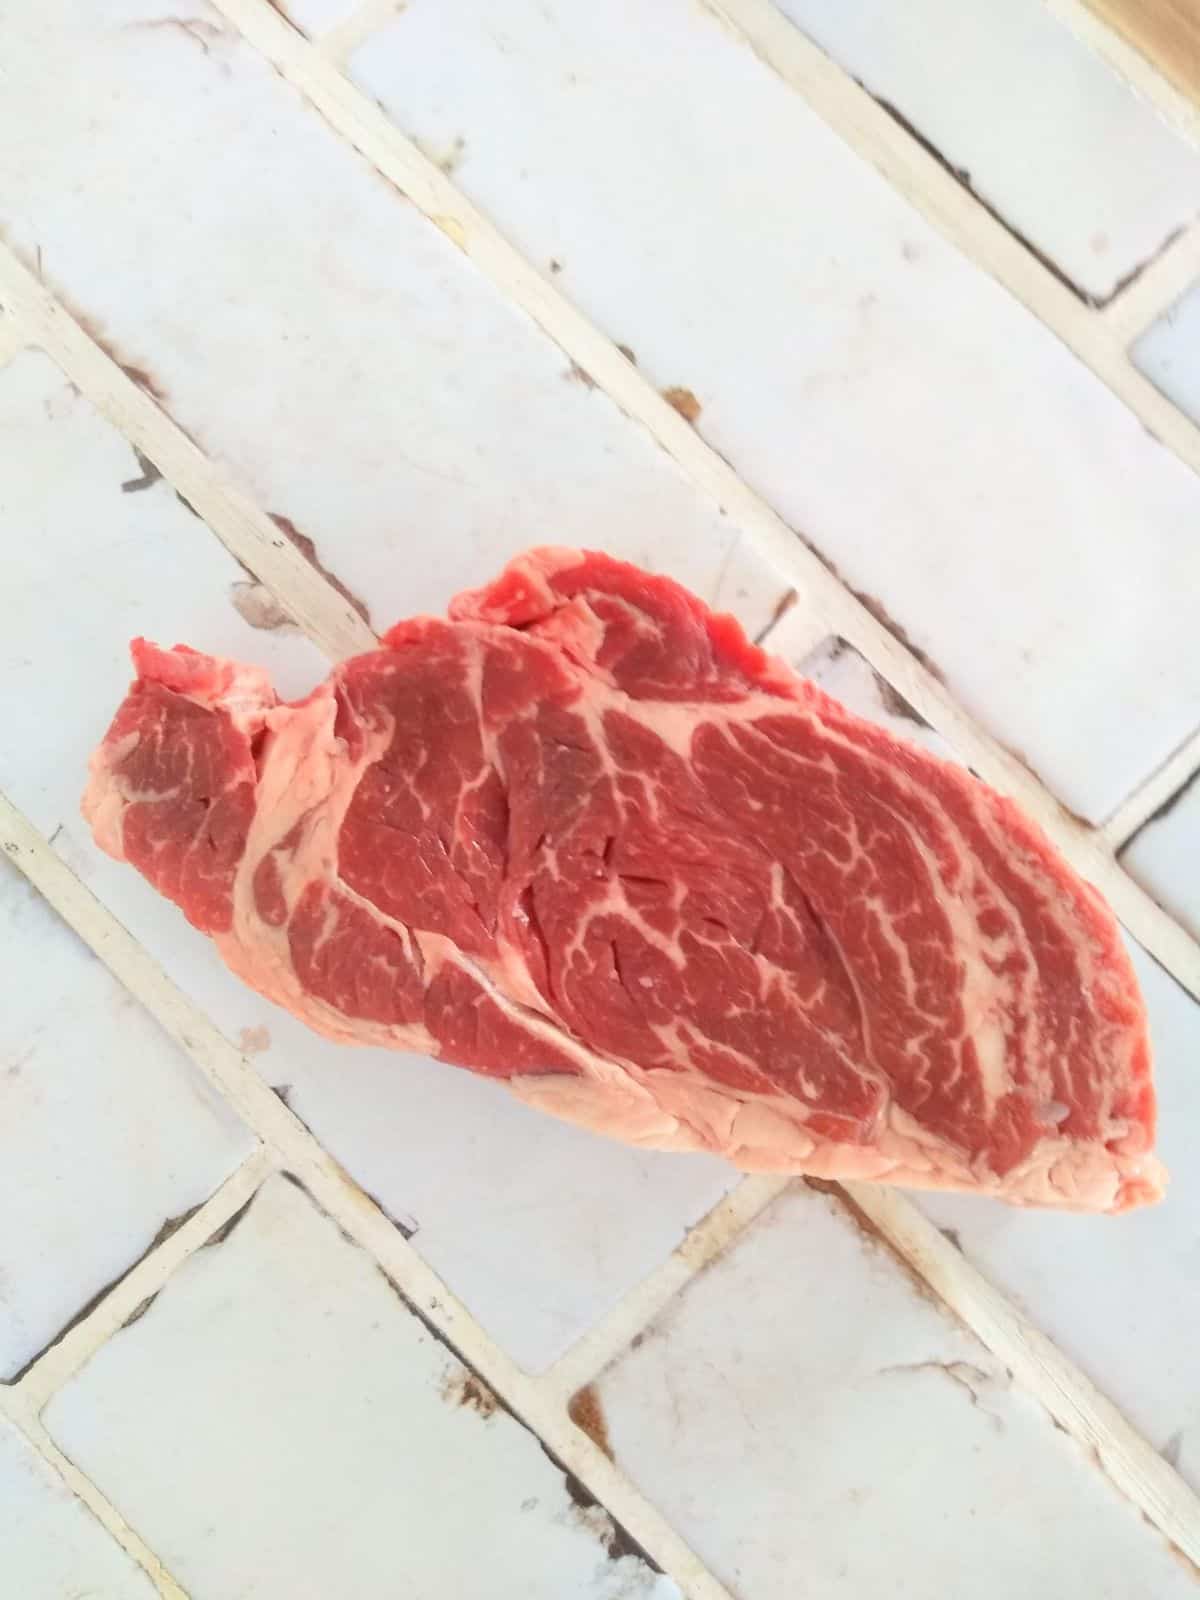 A raw center eye chuck eye steak sitting on white tile countertop.